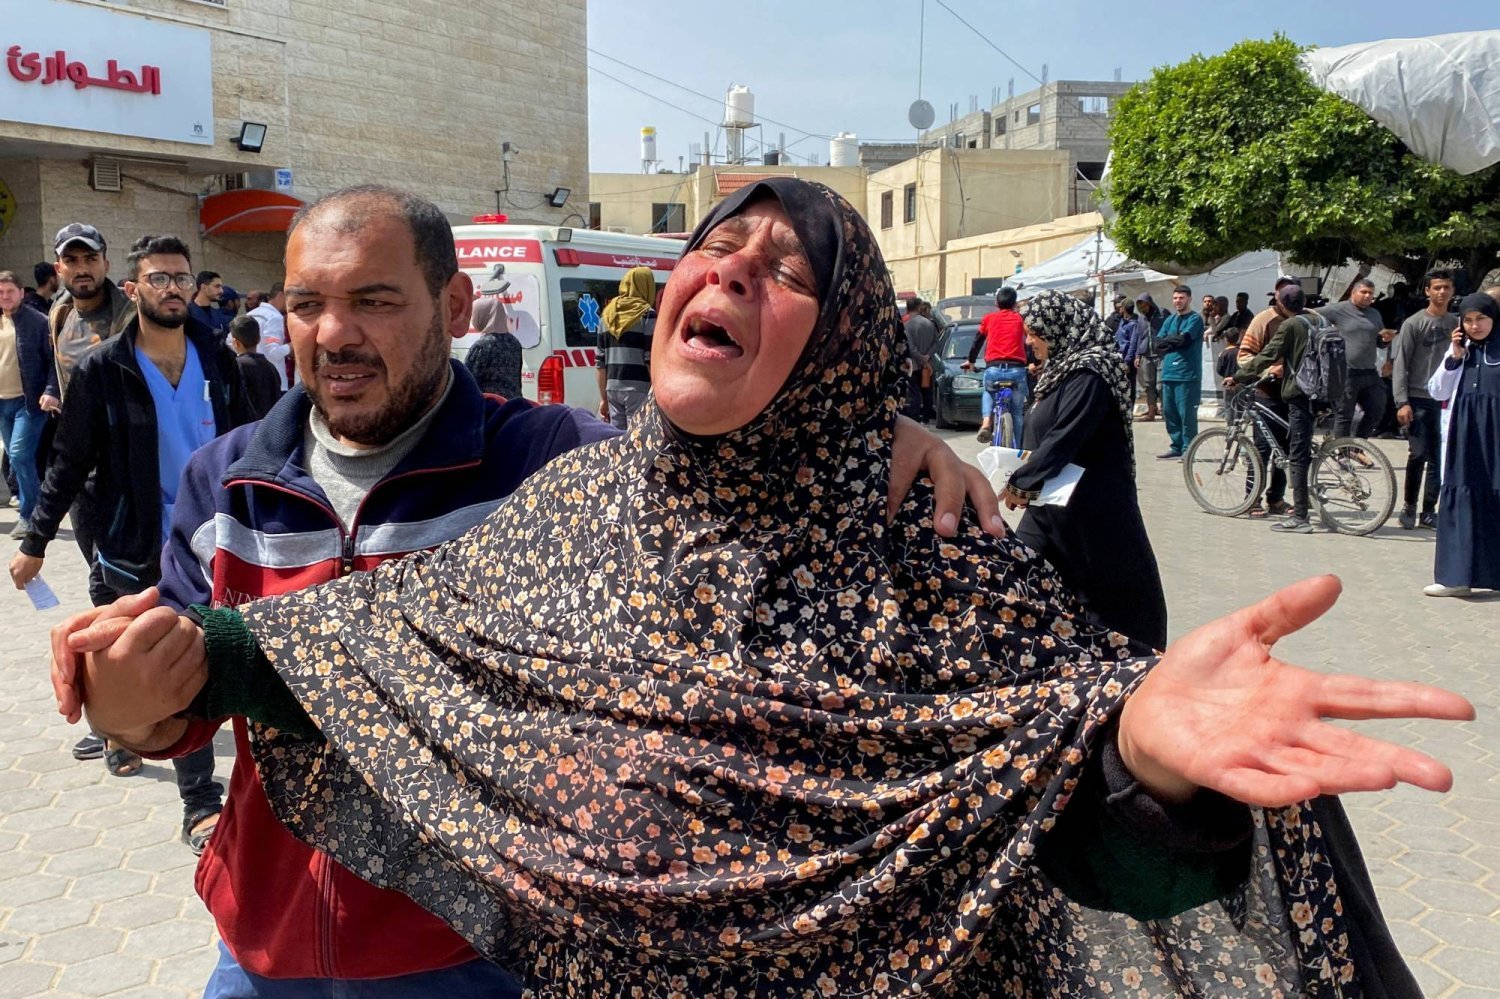 İsrail'in dün (Çarşamba) Deyr el-Balah'taki el-Aksa Hastanesi önünde düzenlediği bombalı saldırıda öldürülen oğlu Halil Ebu Şemale için ağlayan annesi. (Reuters)